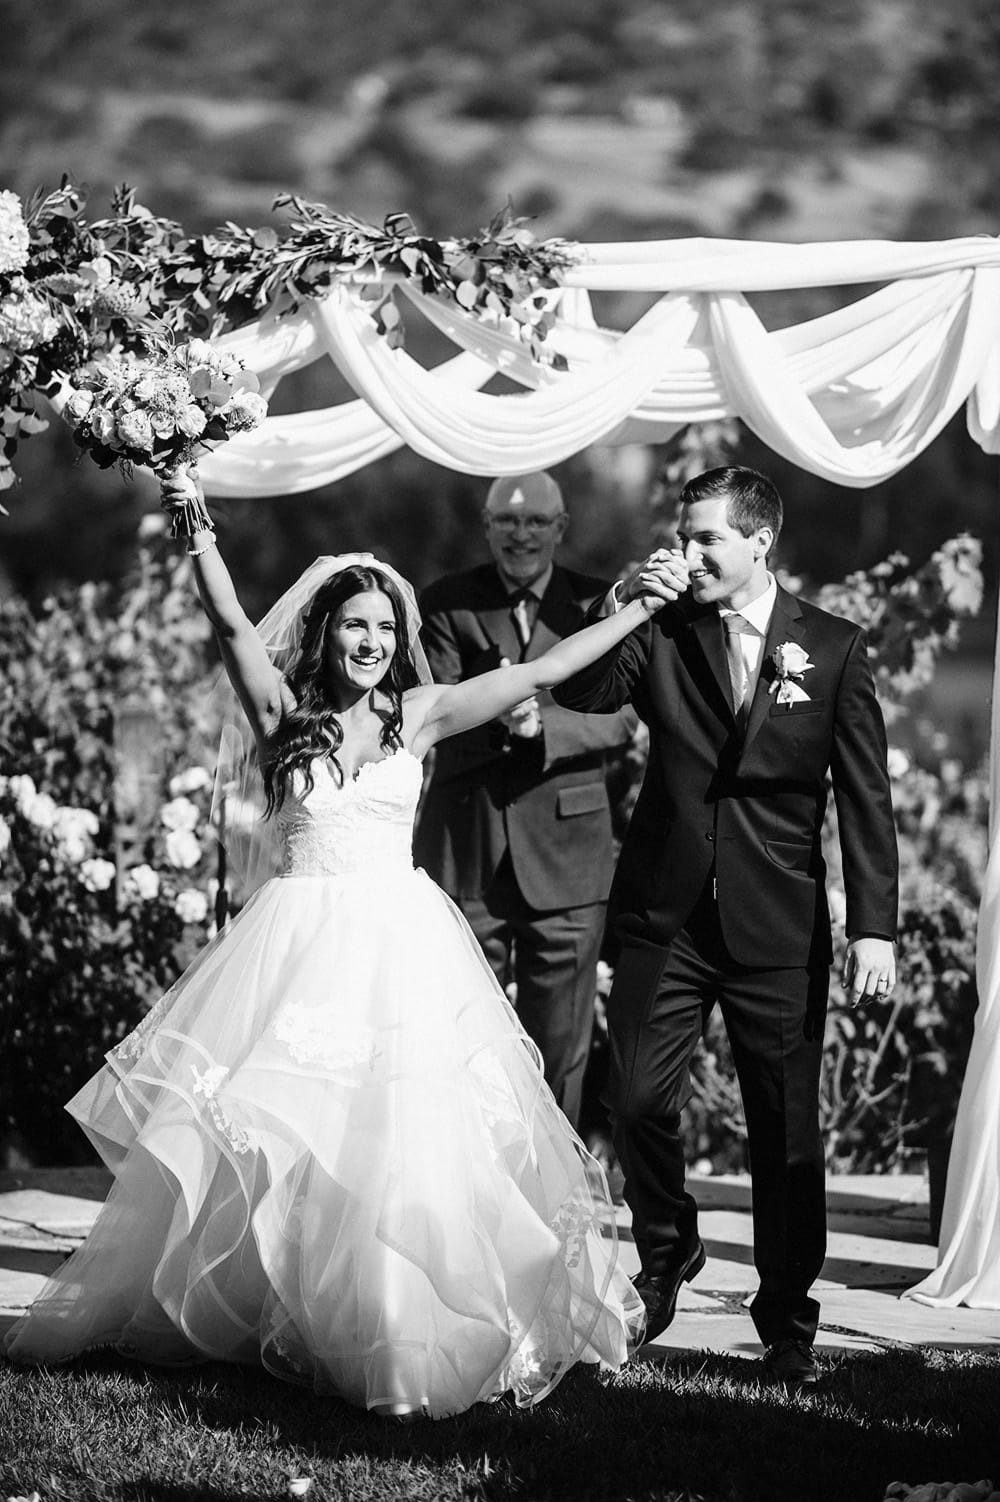 San Luis Obispo Wedding Photographer - Bluephoto Wedding Photography - www.bluephoto.biz